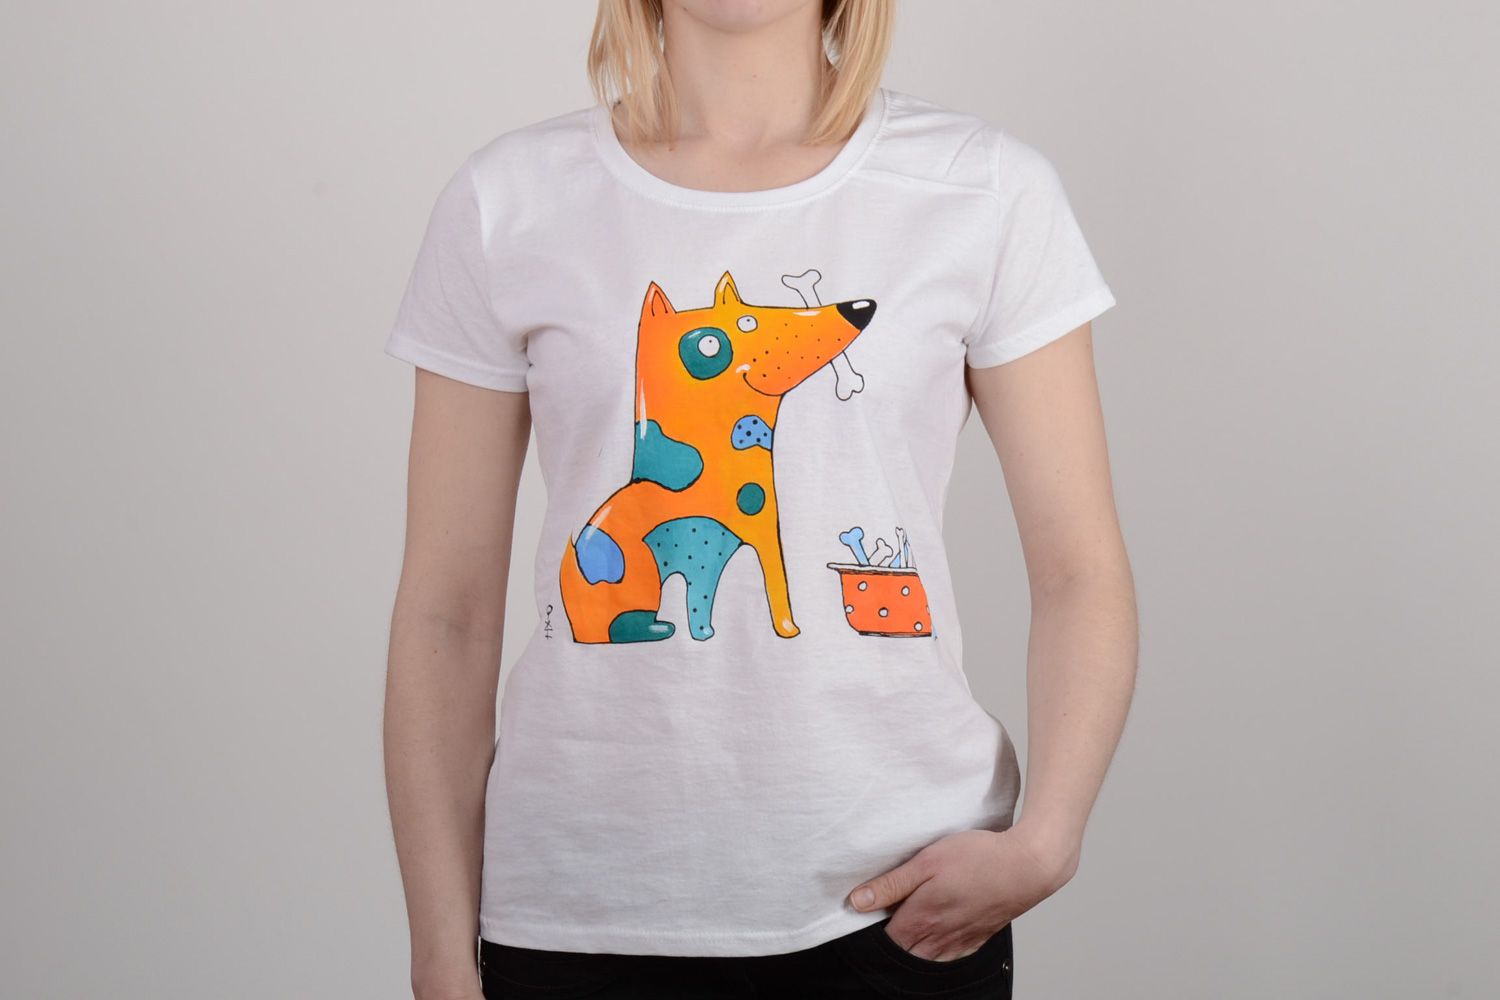 Handgemachtes Sporthemd aus Baumwolle mit bemaltem Hund von Acrylfarben Schön foto 1